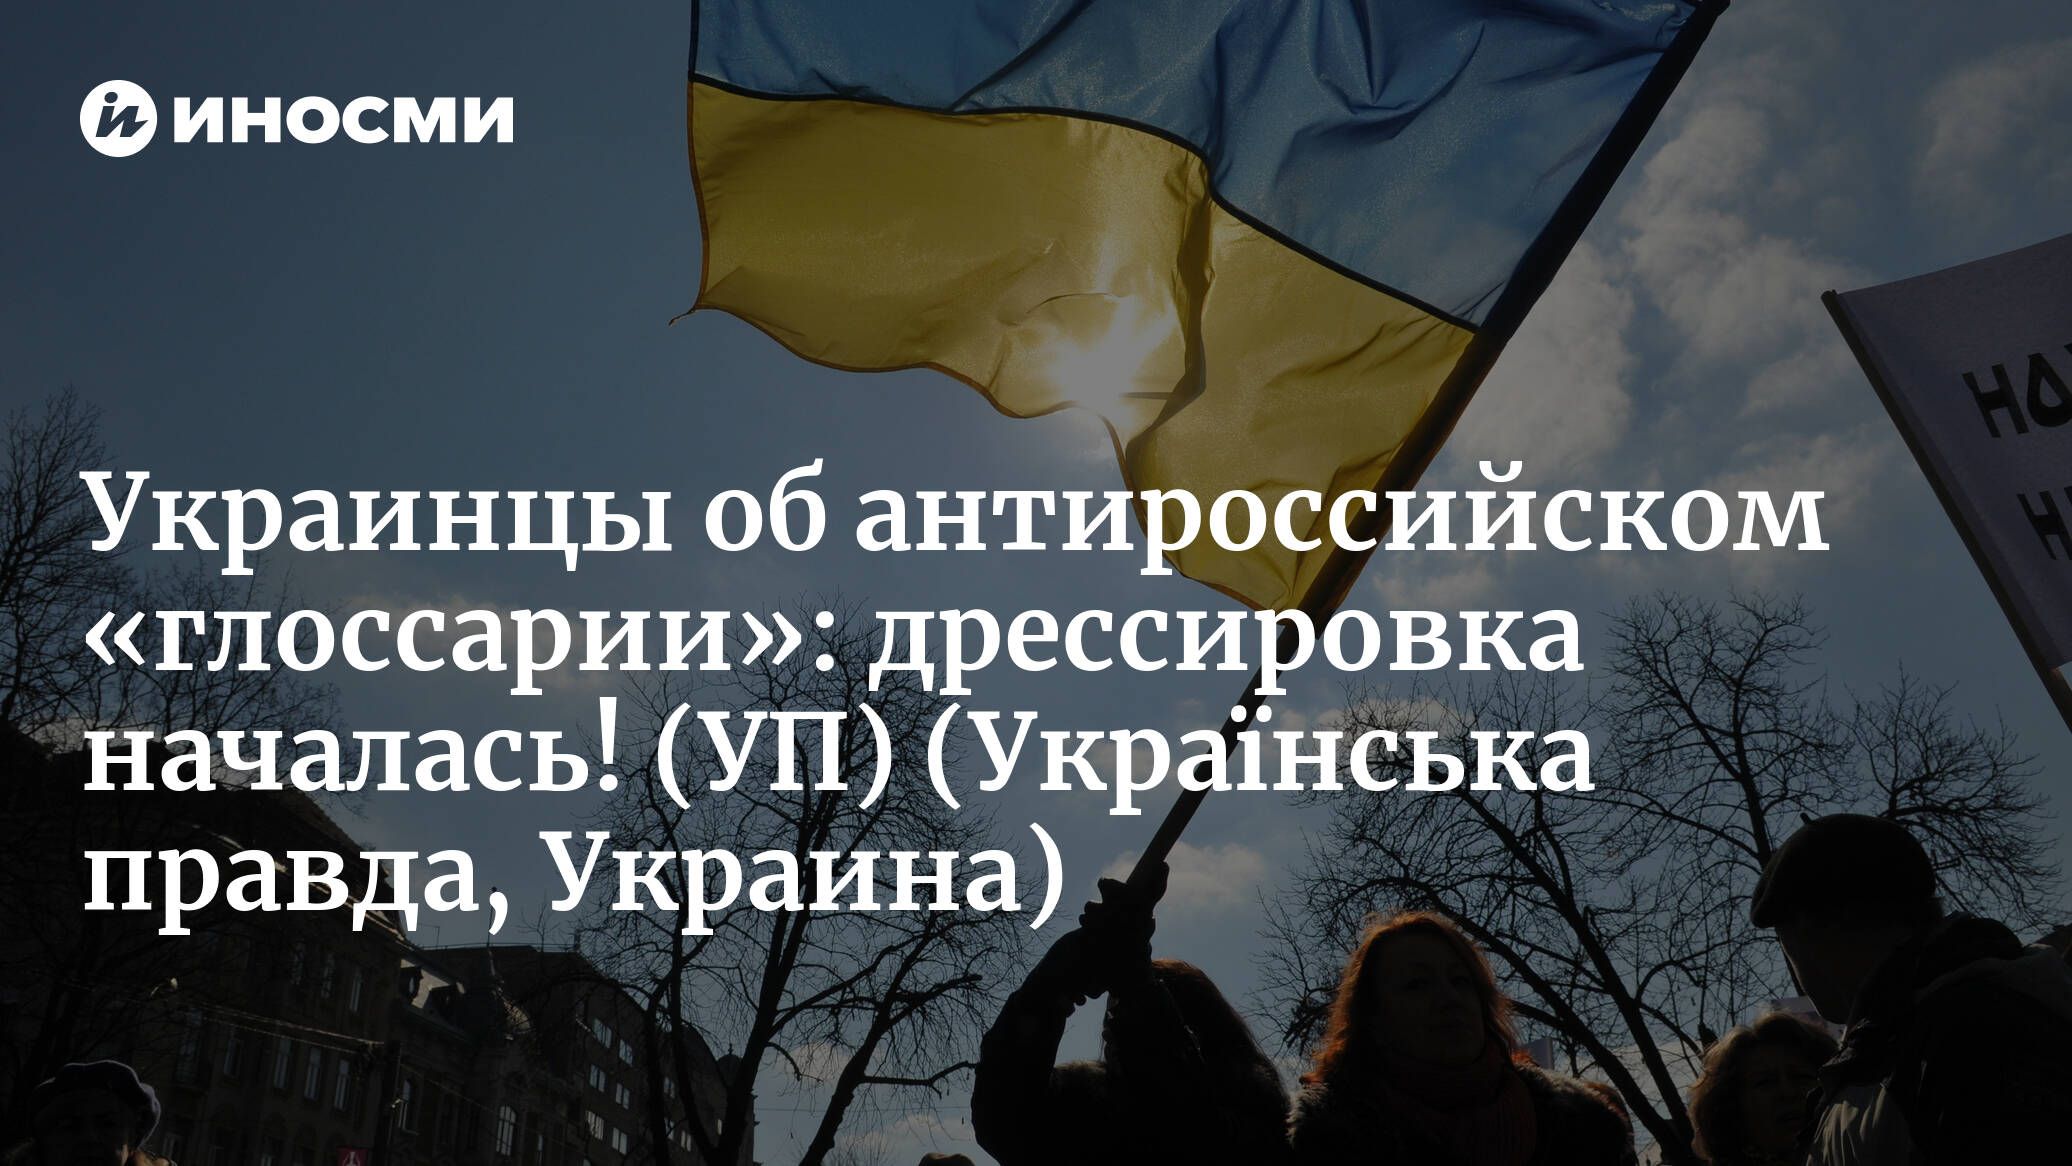 Правда украины не будет